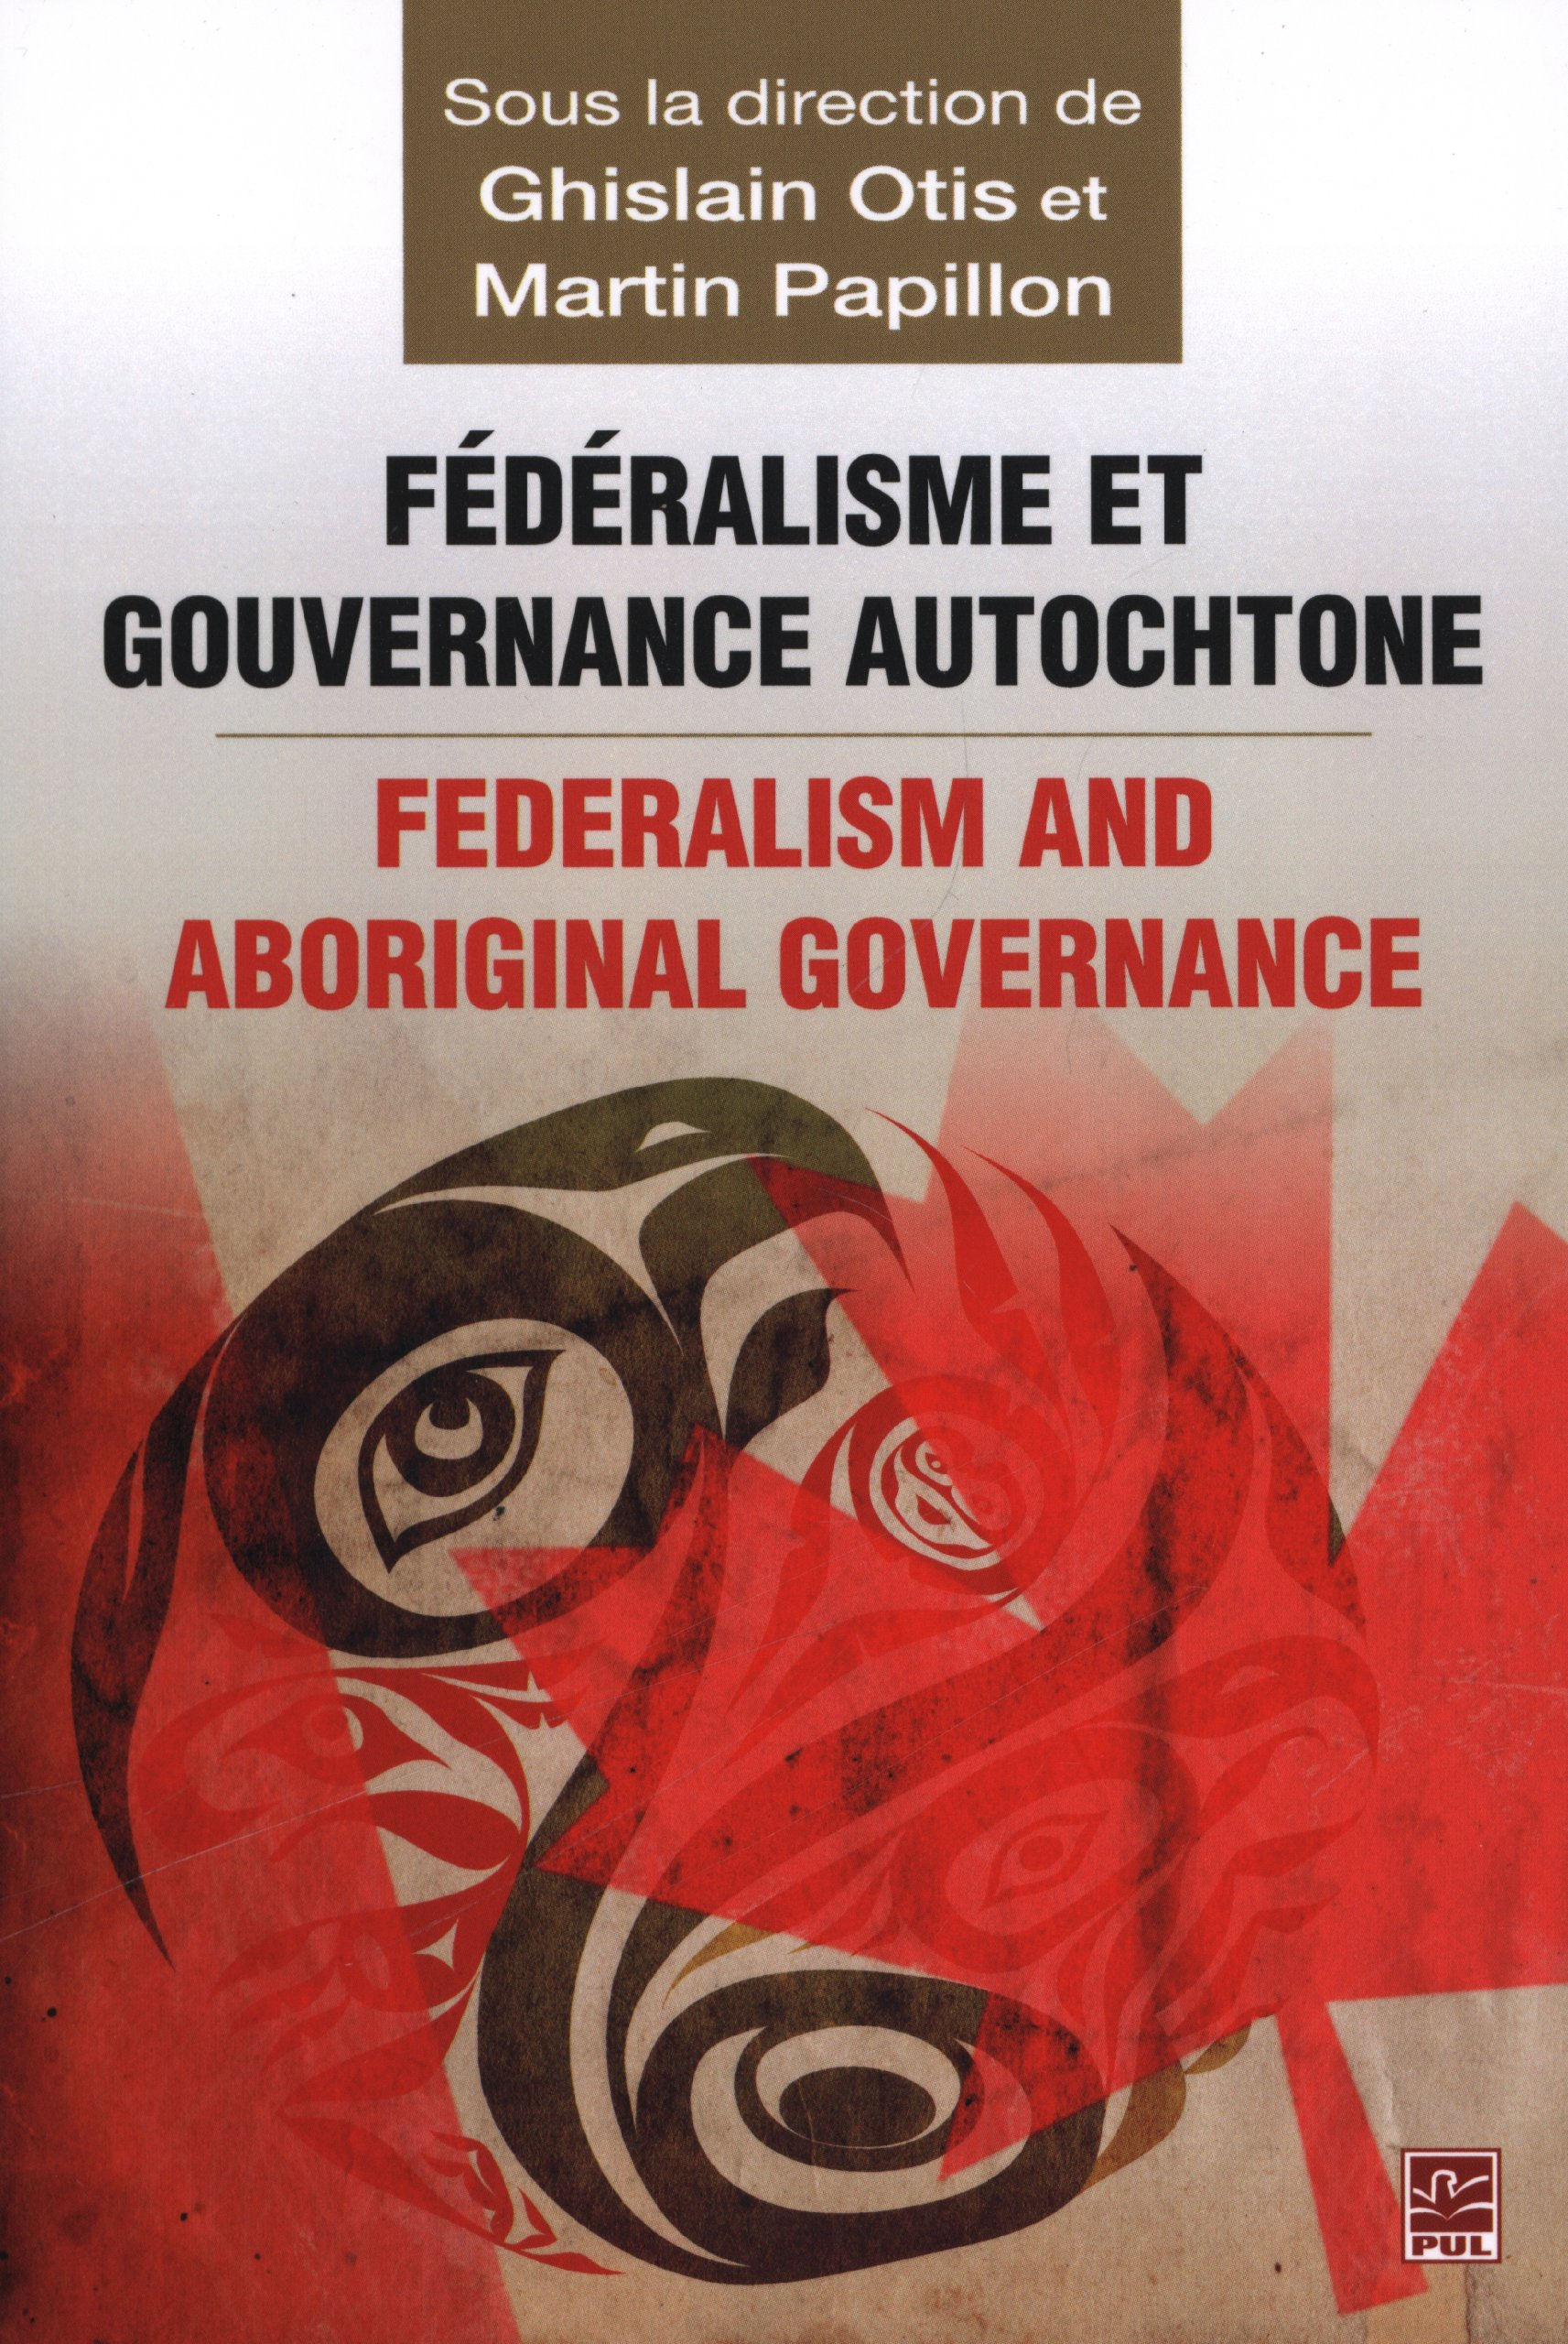 Fédéralisme et gouvernance autochtone. Federalism and Aboriginal Governance